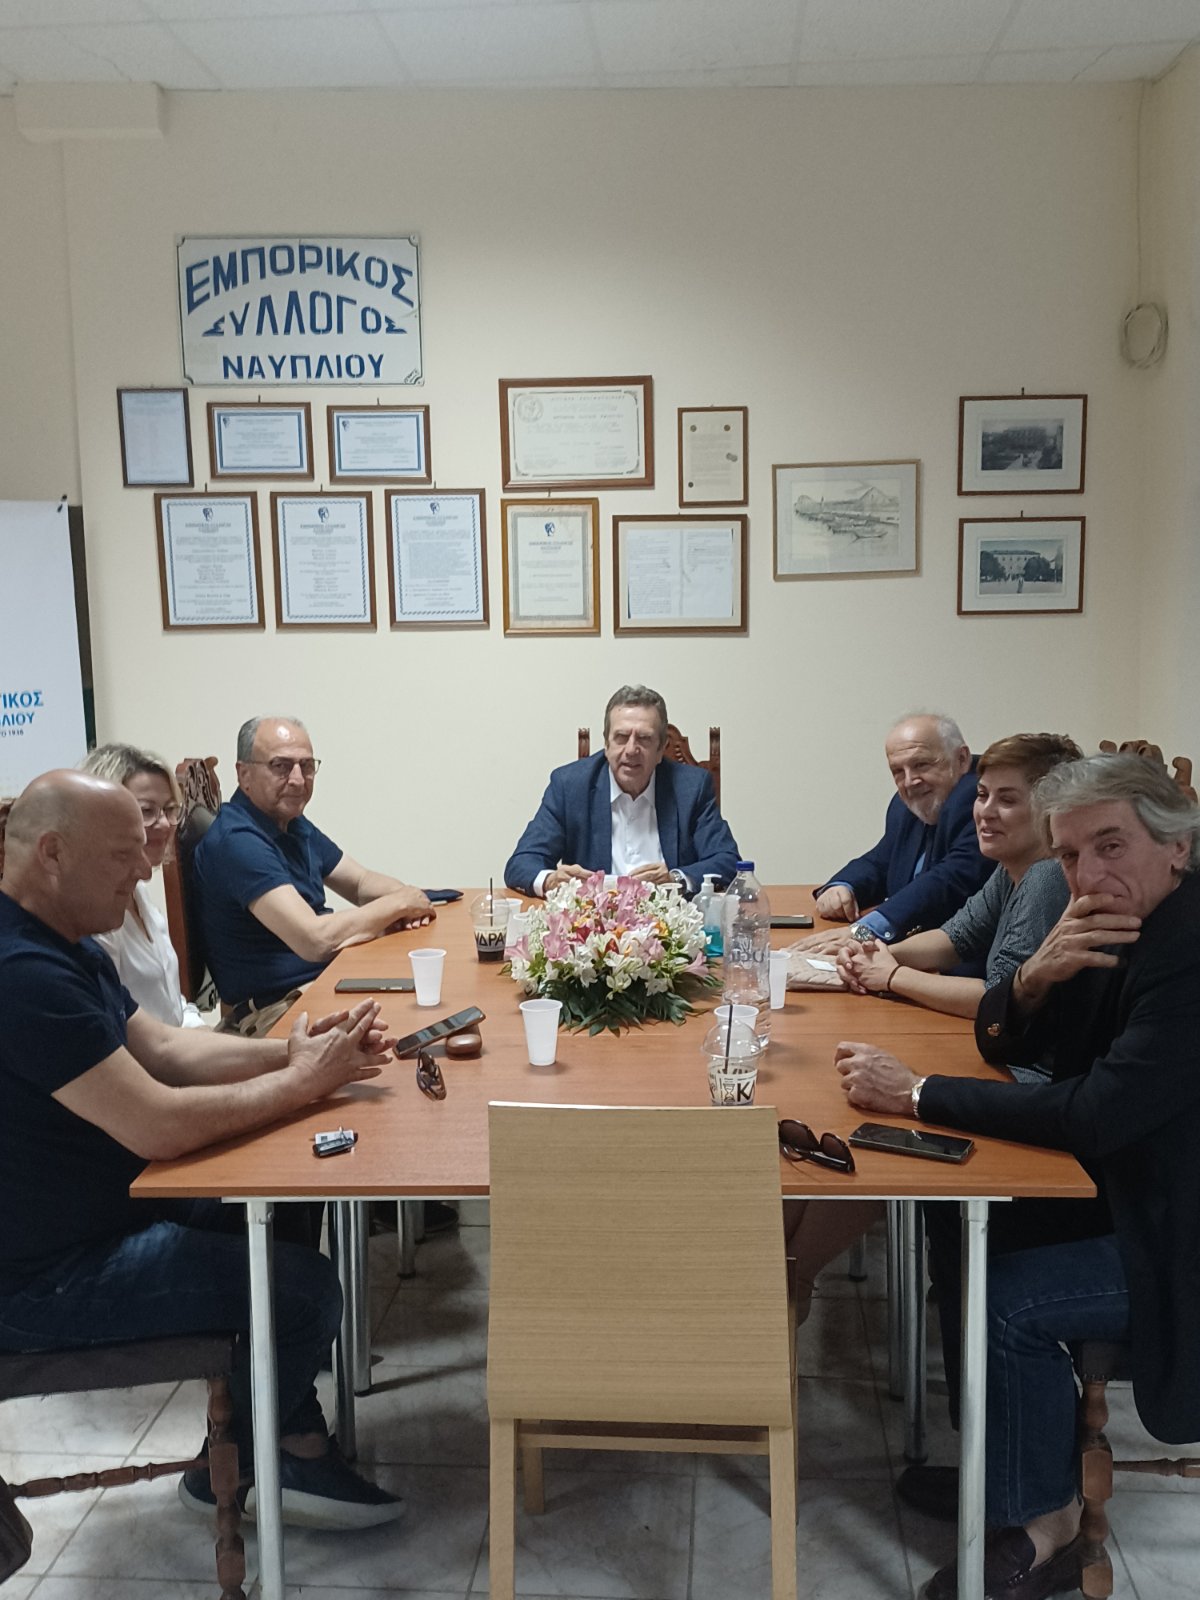 Ναύπλιο: Συνάντηση του Εμπορικού Συλλόγου με τον πρόεδρο της Ελληνικής Συνομοσπονδίας Εμπορίου και Επιχειρηματικότητας